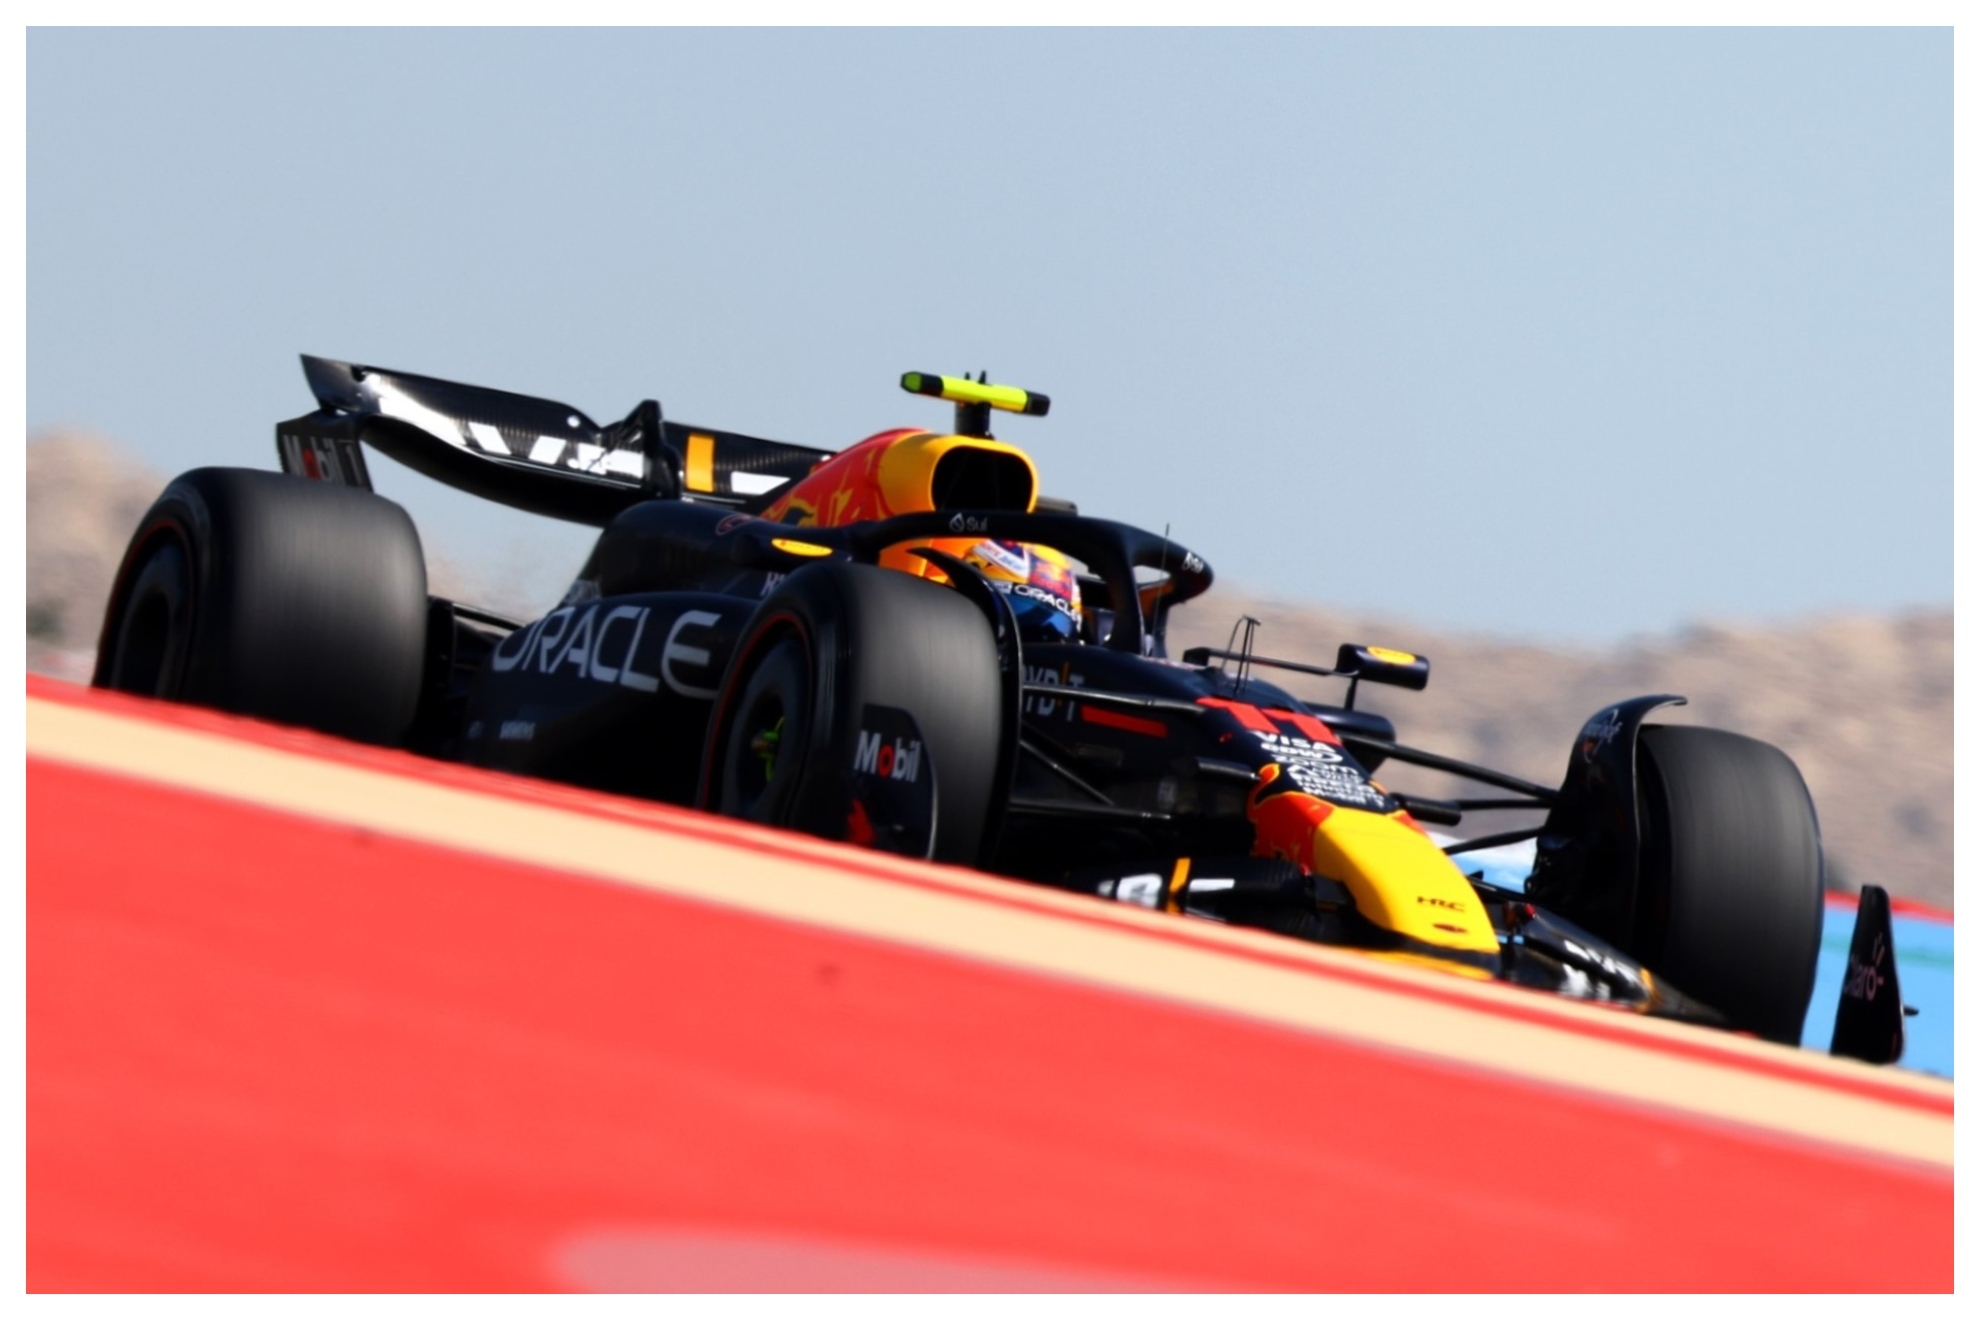 Checo Prez arranca discreto con su nuevo Red Bull y se queda lejos del ritmo de Verstappen